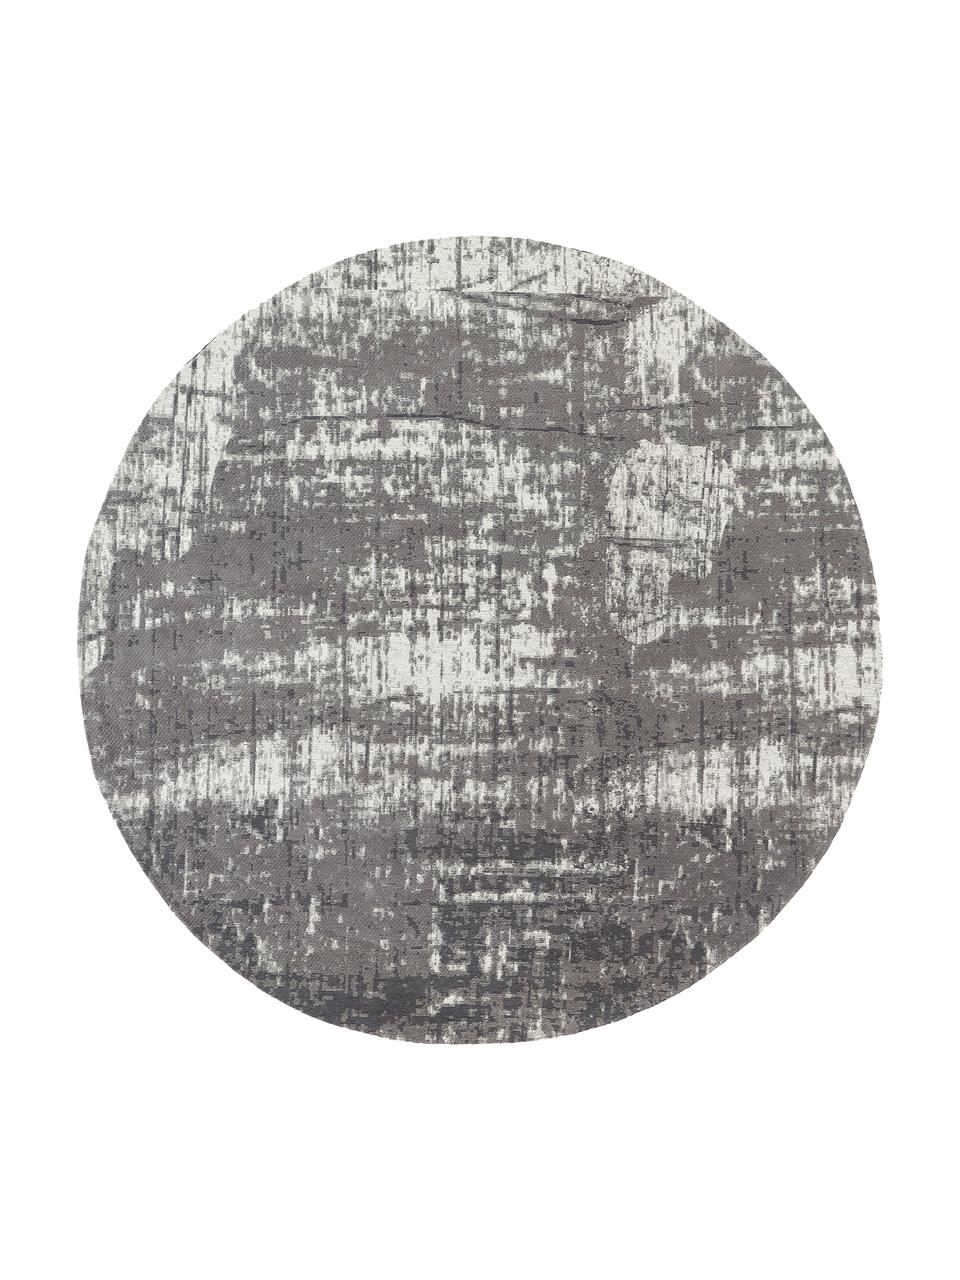 Tapis rond vintage coton tissé main Luise, Tons gris et blancs, Ø 120 cm (taille S)